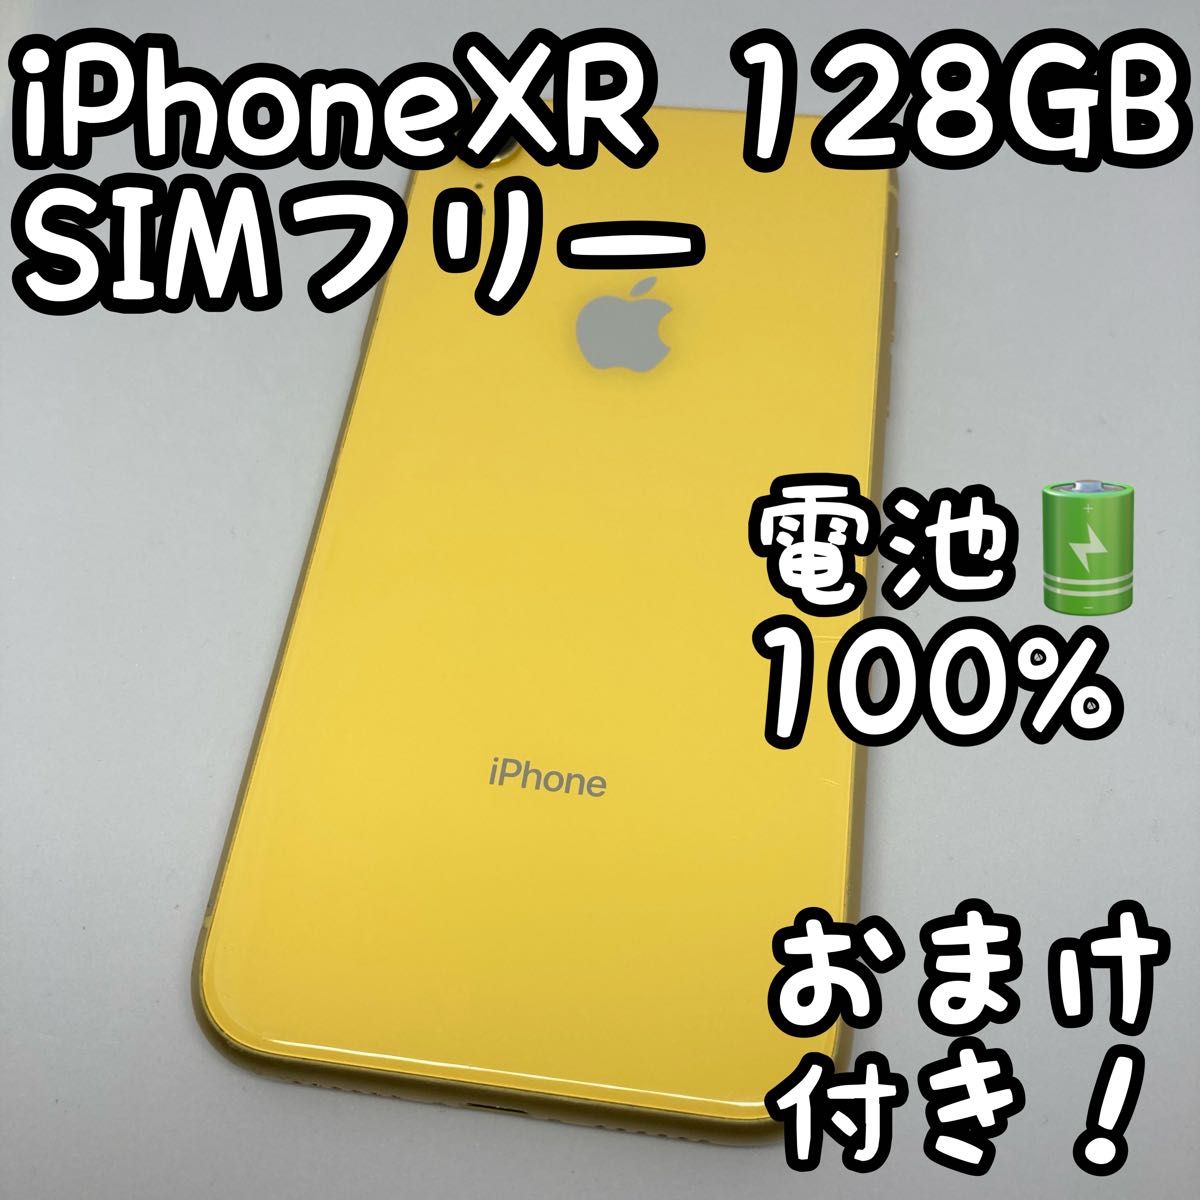 iPhone XR Yellow 128GB SIMフリー 本体 803